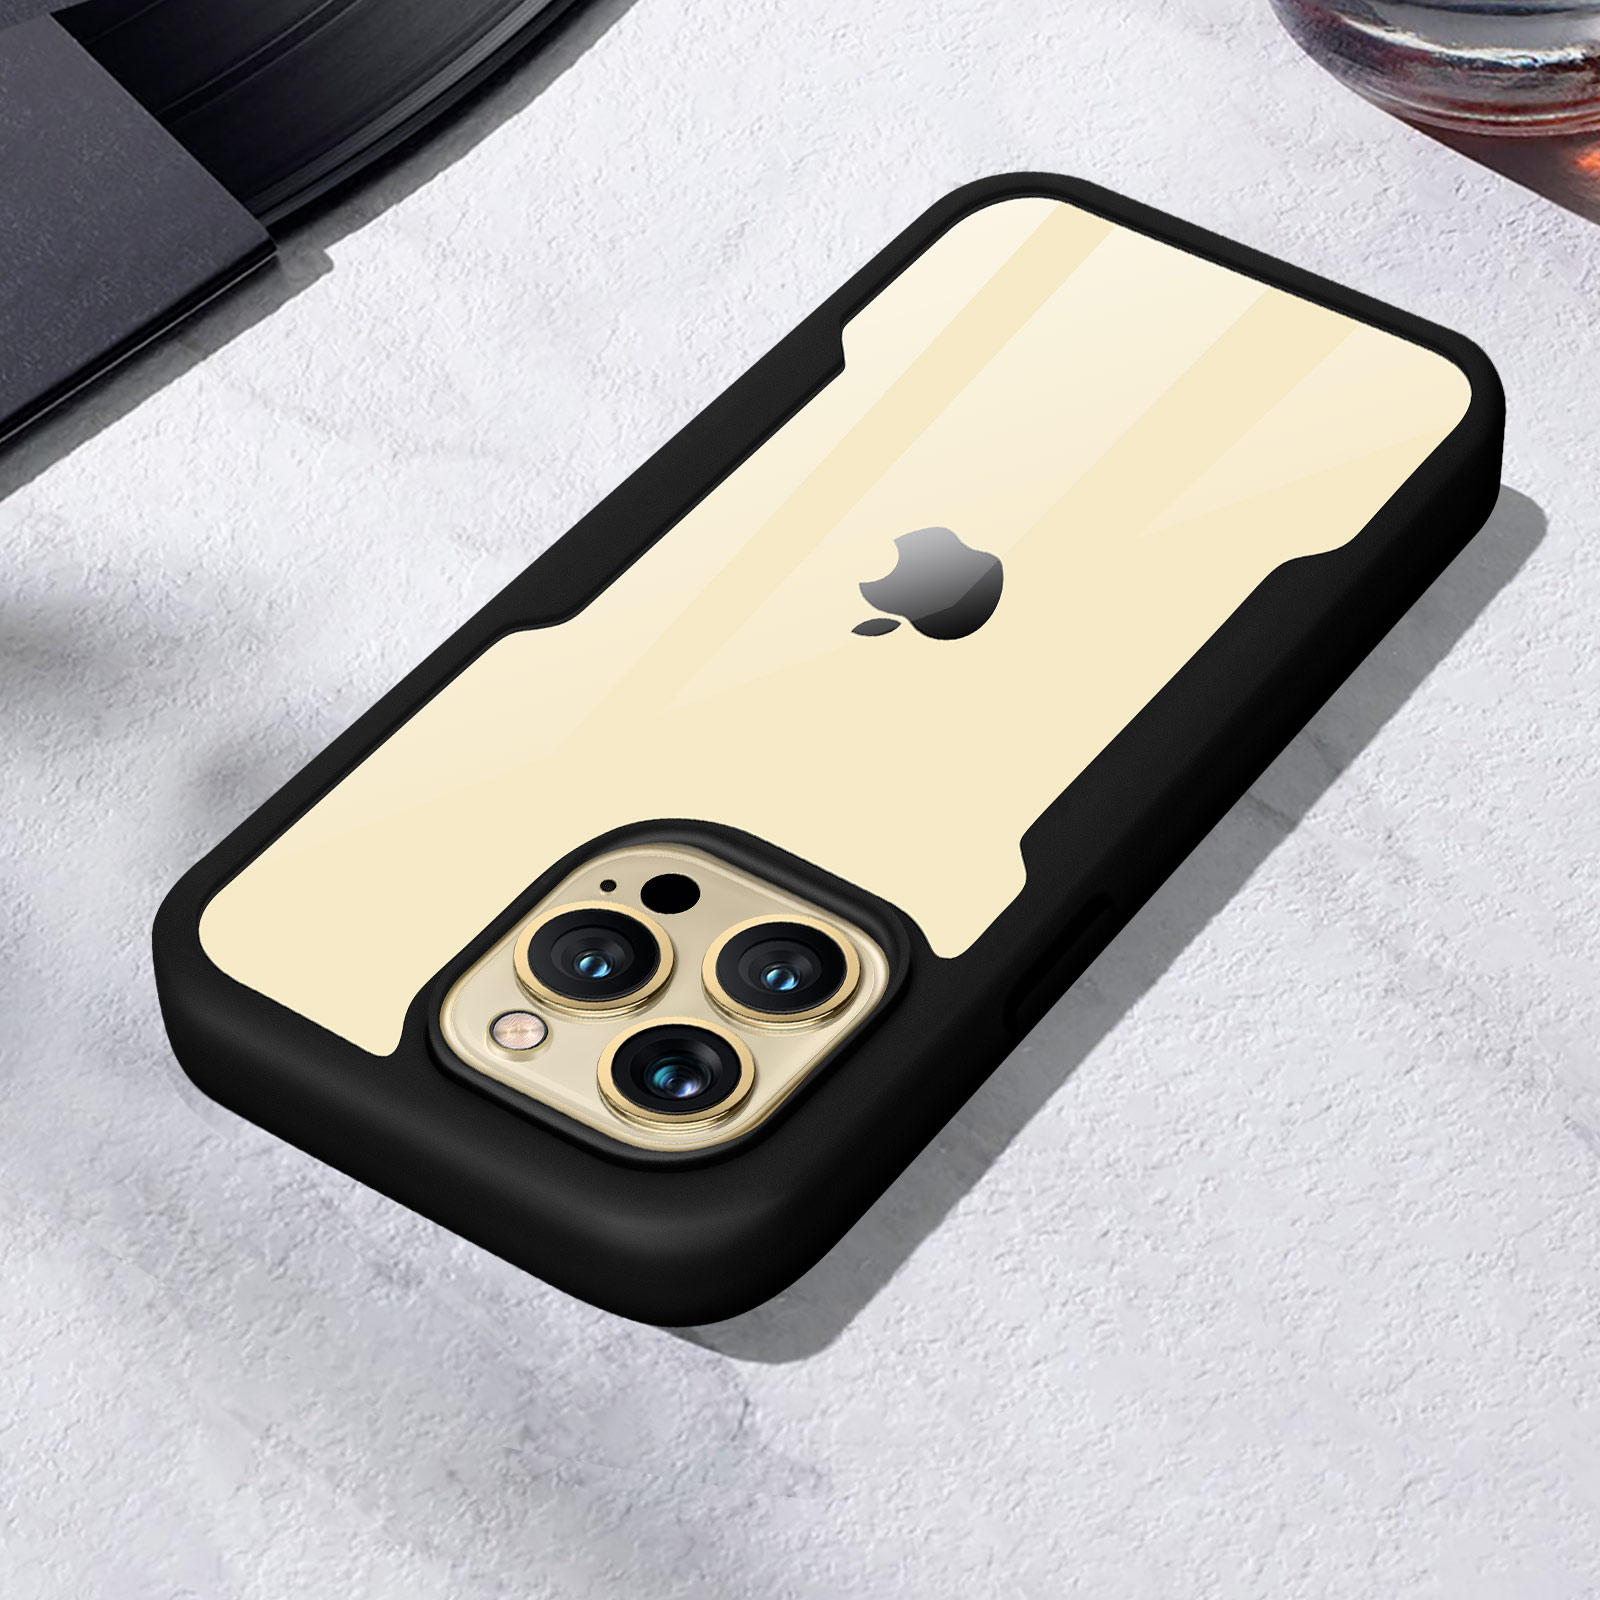 RhinoShield Clear - Coque de protection pour iPhone 13 Pro - noir